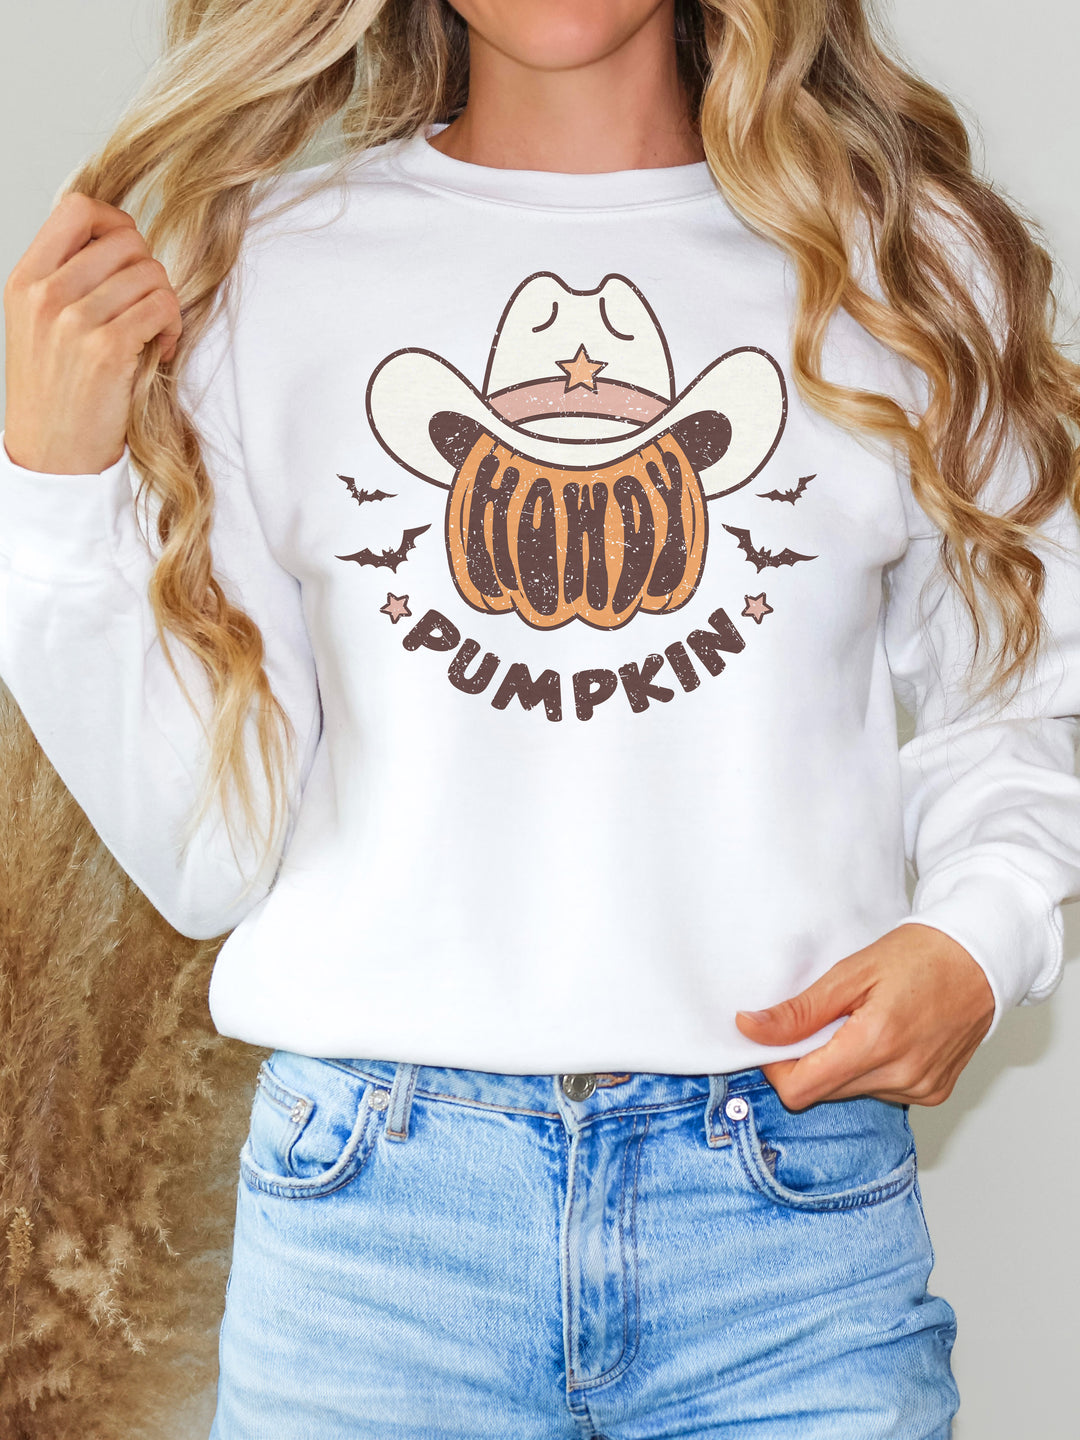 Glamfox - Howdy Pumpkin Graphic Sweater